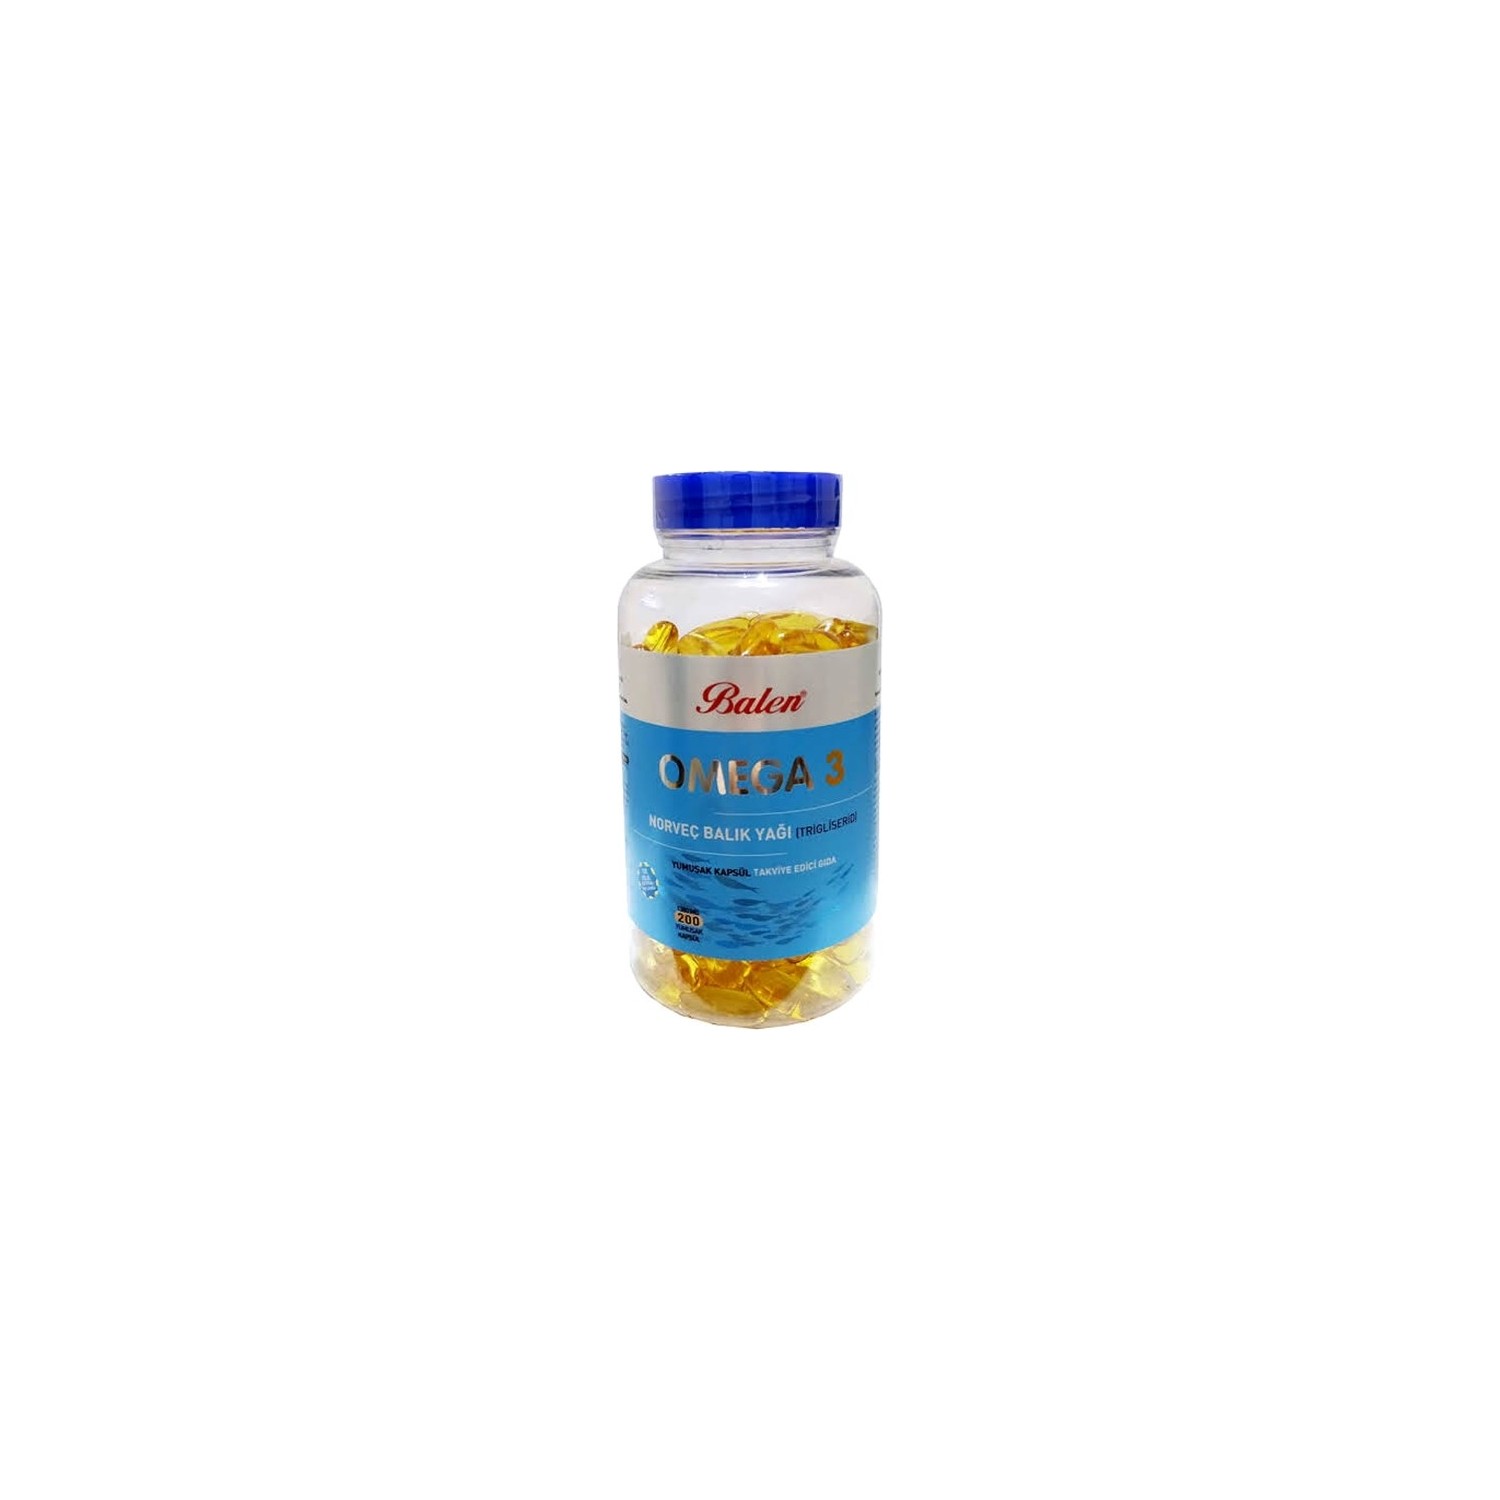 Норвежский рыбий жир Balen Omega-3 (триглицерид) 1380 мг, 200 капсул рыбий жир в капсулах vitateka с маслом шиповника 100 шт